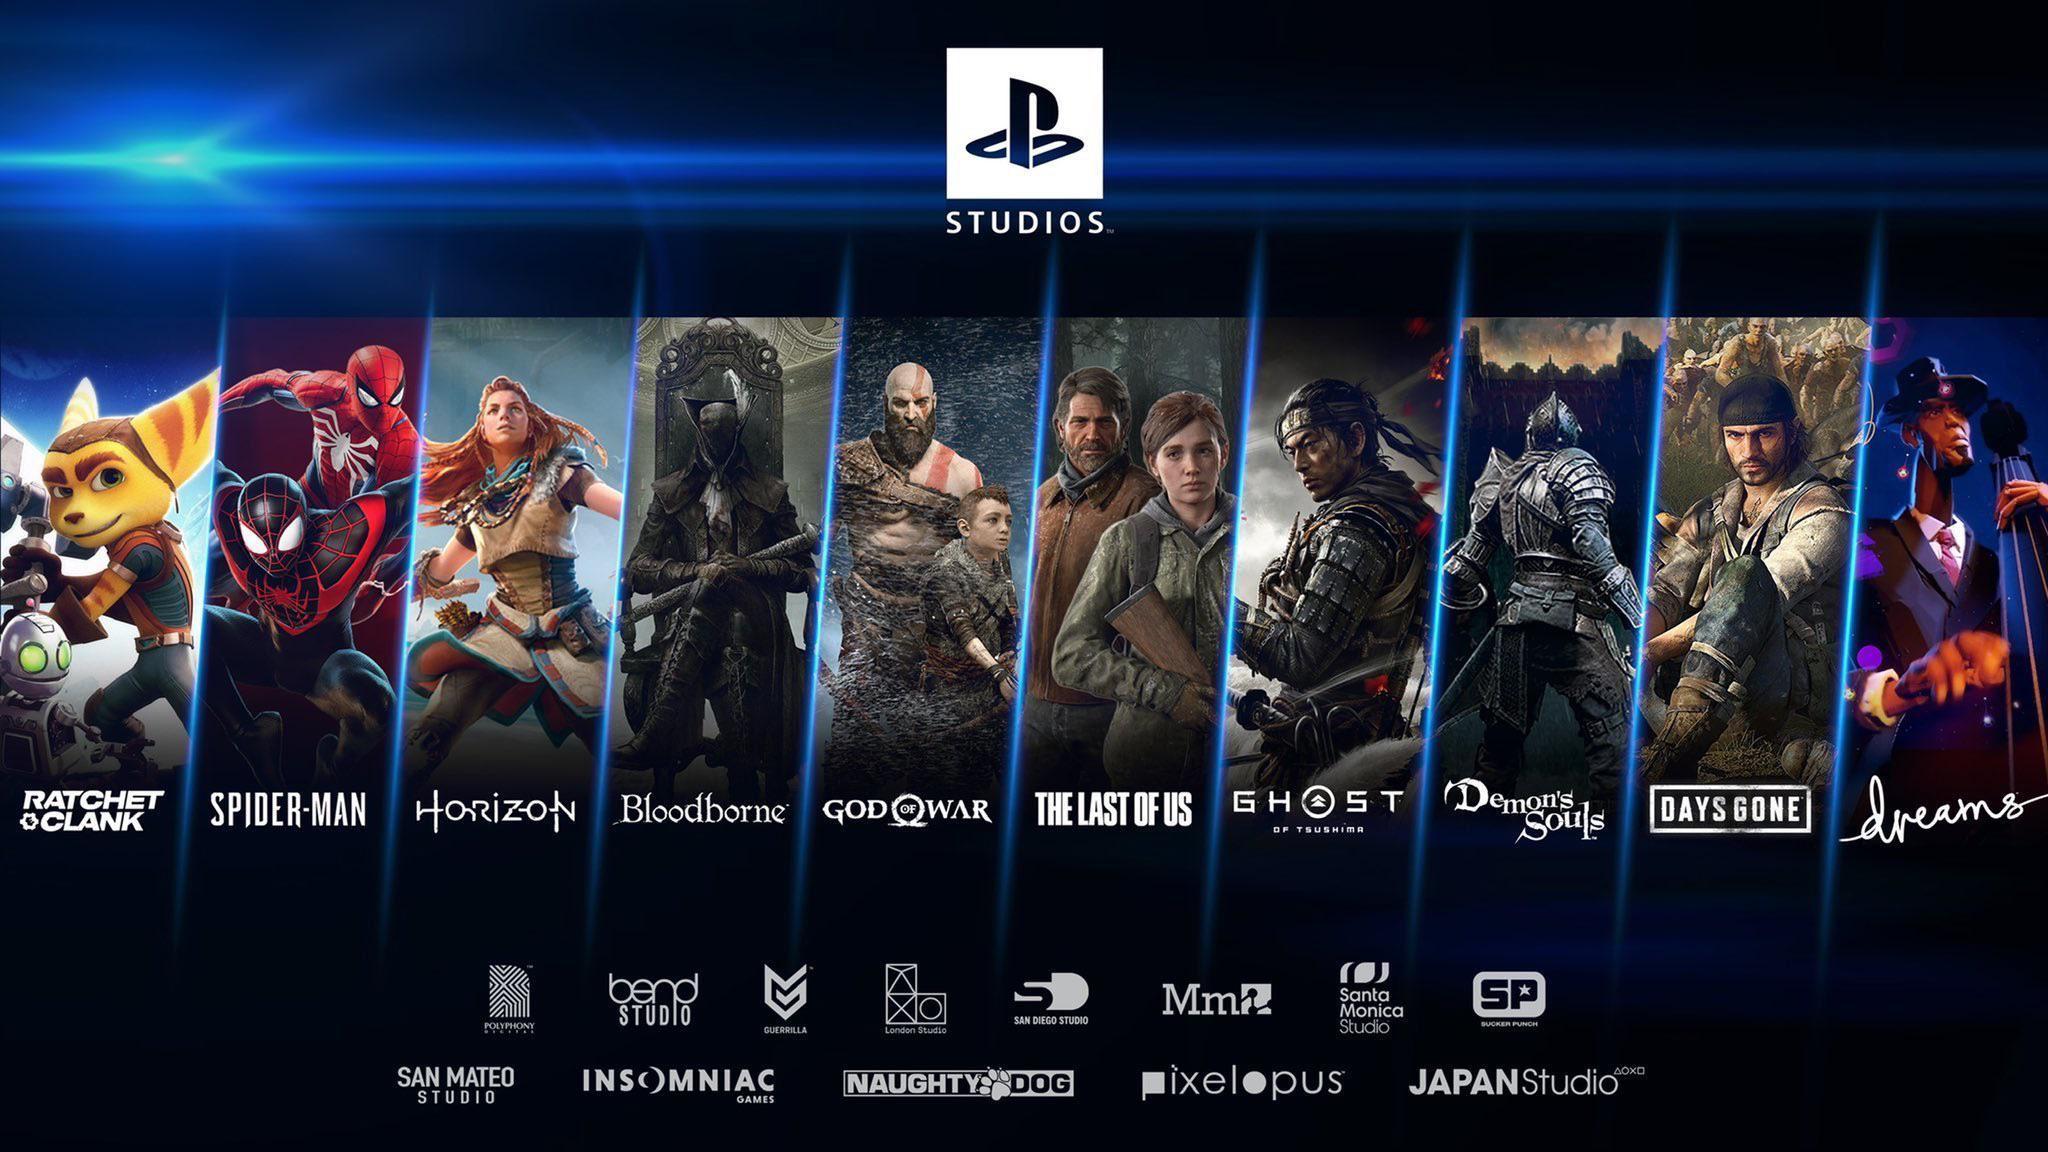 Immagine di PlayStation Studios passato, presente e futuro! I videogiochi creati, in sviluppo e rumoreggiati